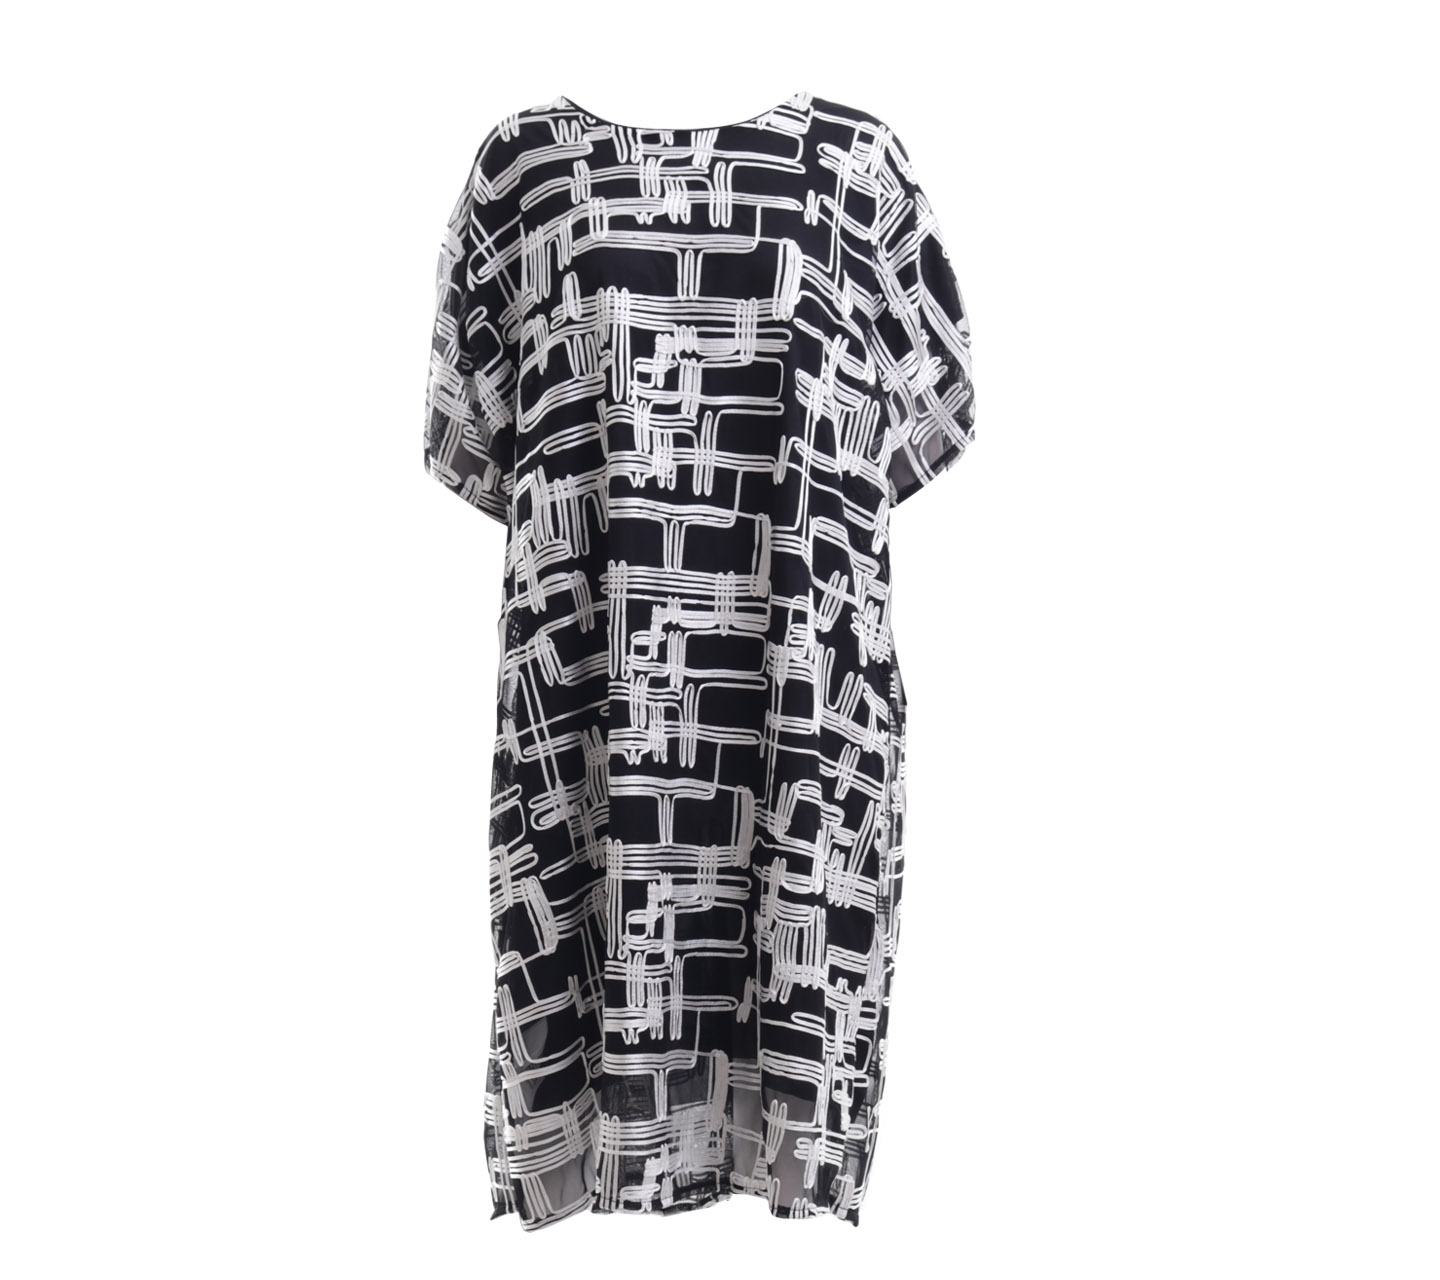 Kyva Black & White Patterned Mini Dress